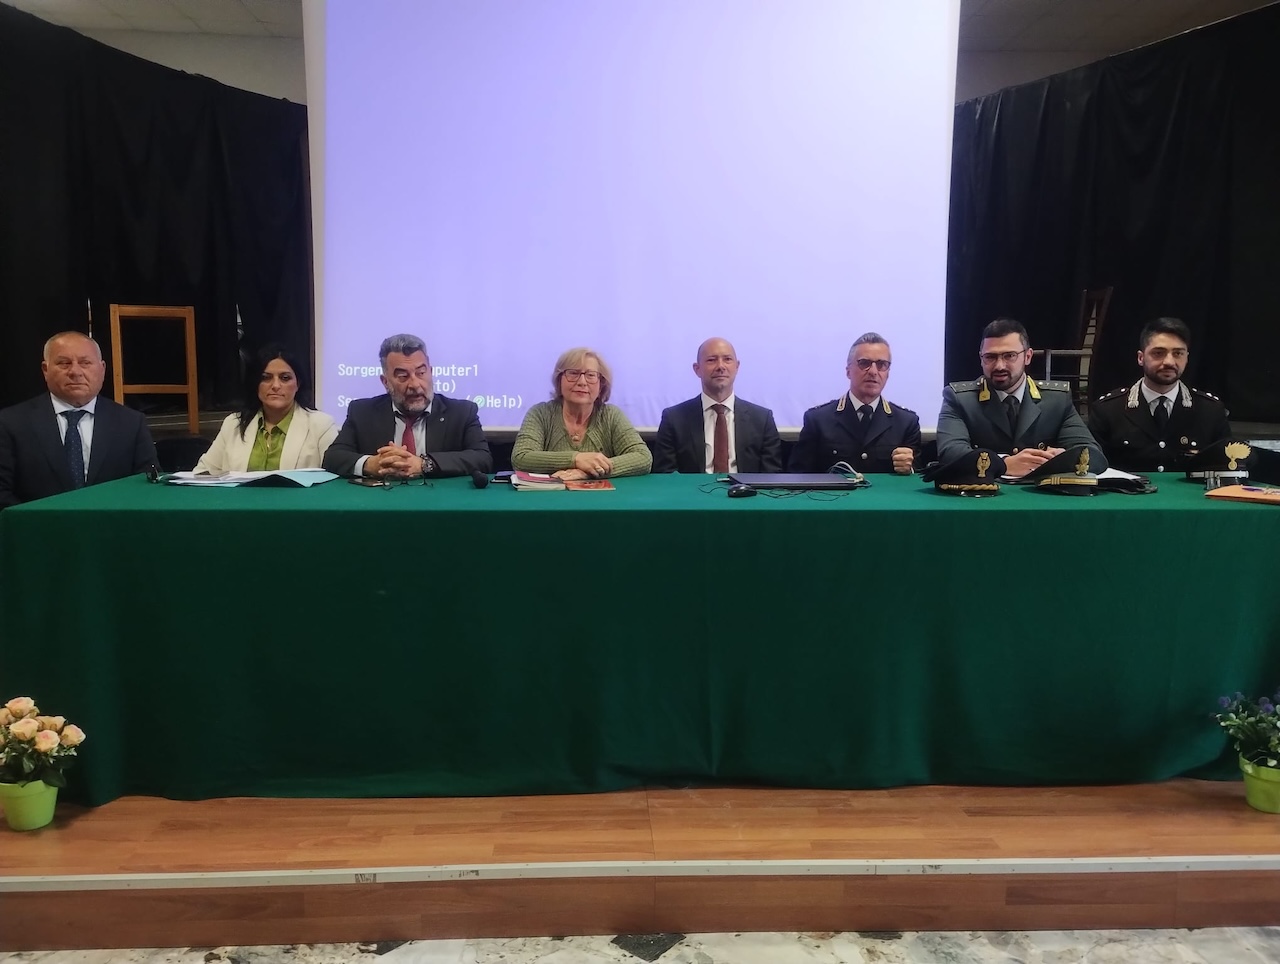 Lezione di Educazione Civica attiva al “Mario Rapisardi” di Paternò grazie a “Libera Impresa” e al suo Presidente Rosario Cunsolo